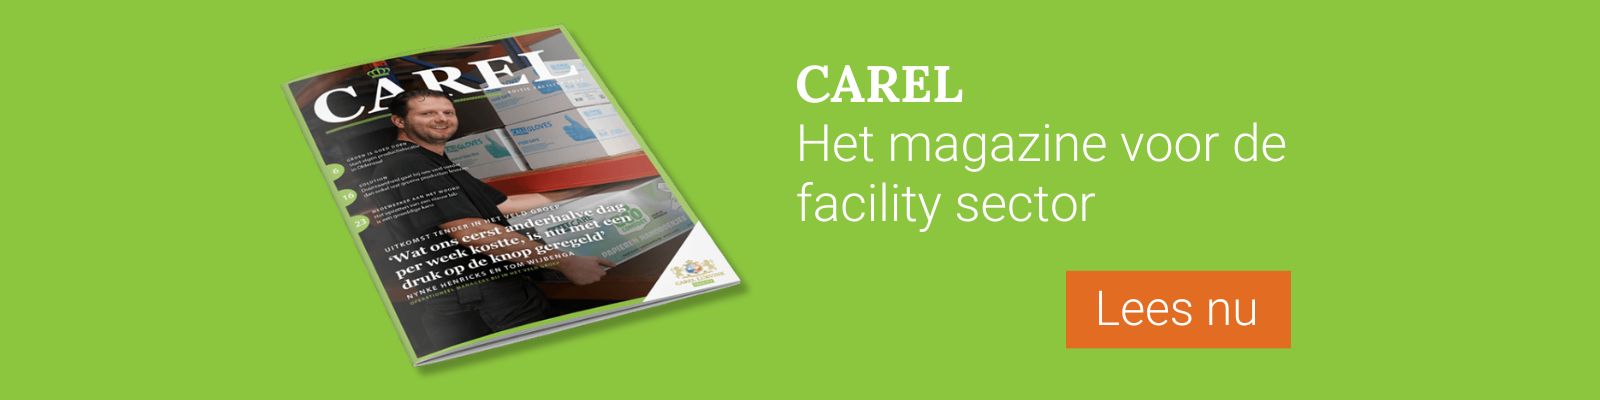 De Carel, het magazine voor de Facility sector